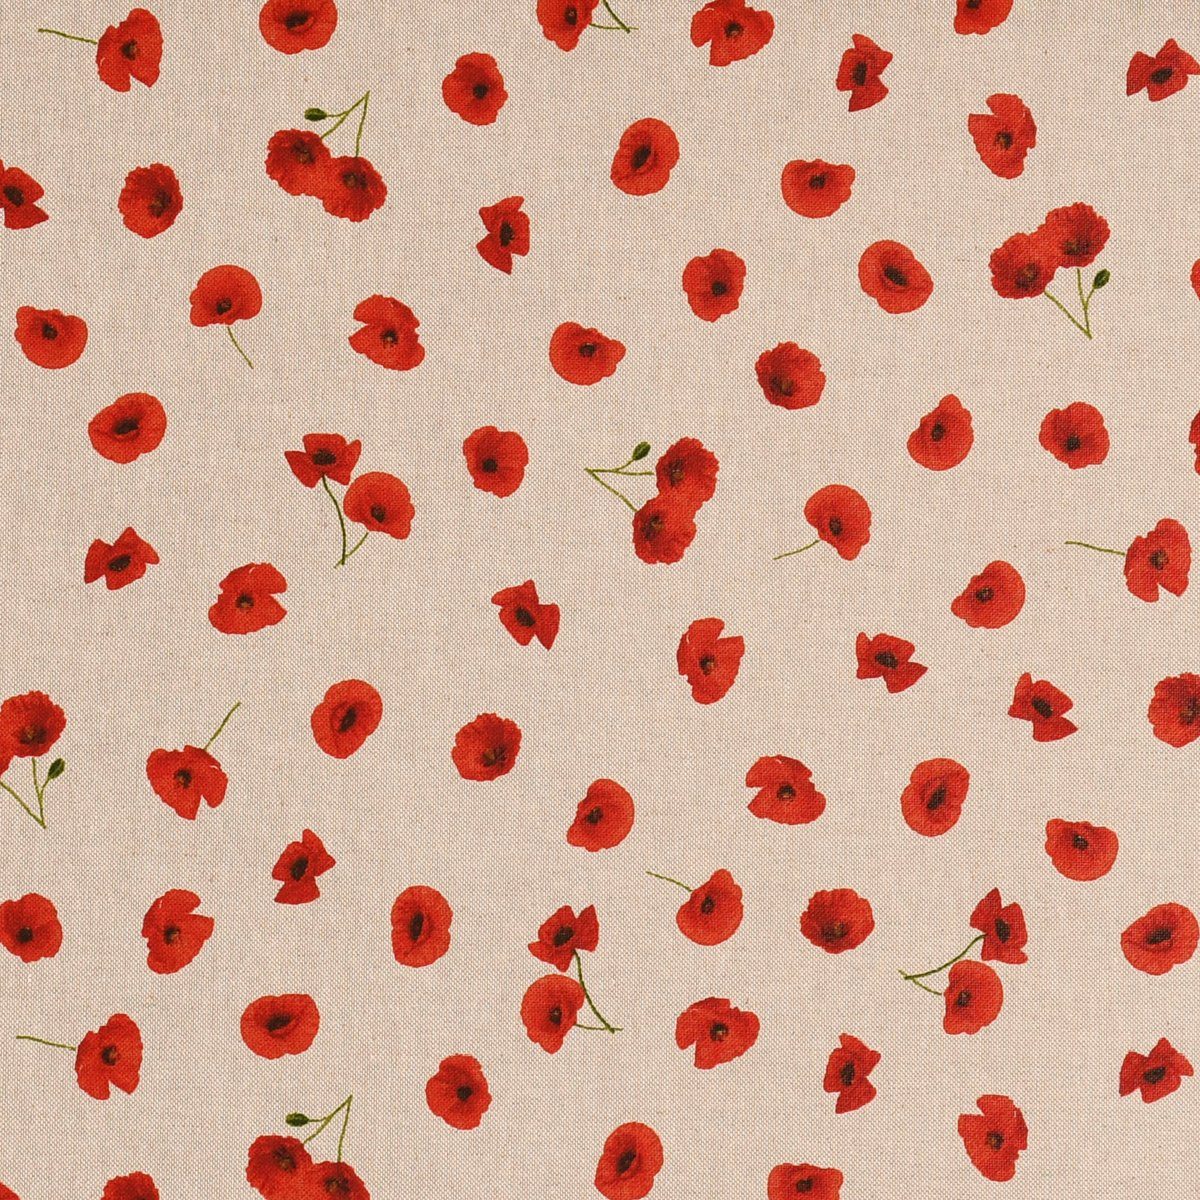 SCHÖNER LEBEN. Stoff Dekostoff Leinenlook Poppy Flower Mohnblüten Allover natur rot 1,40m